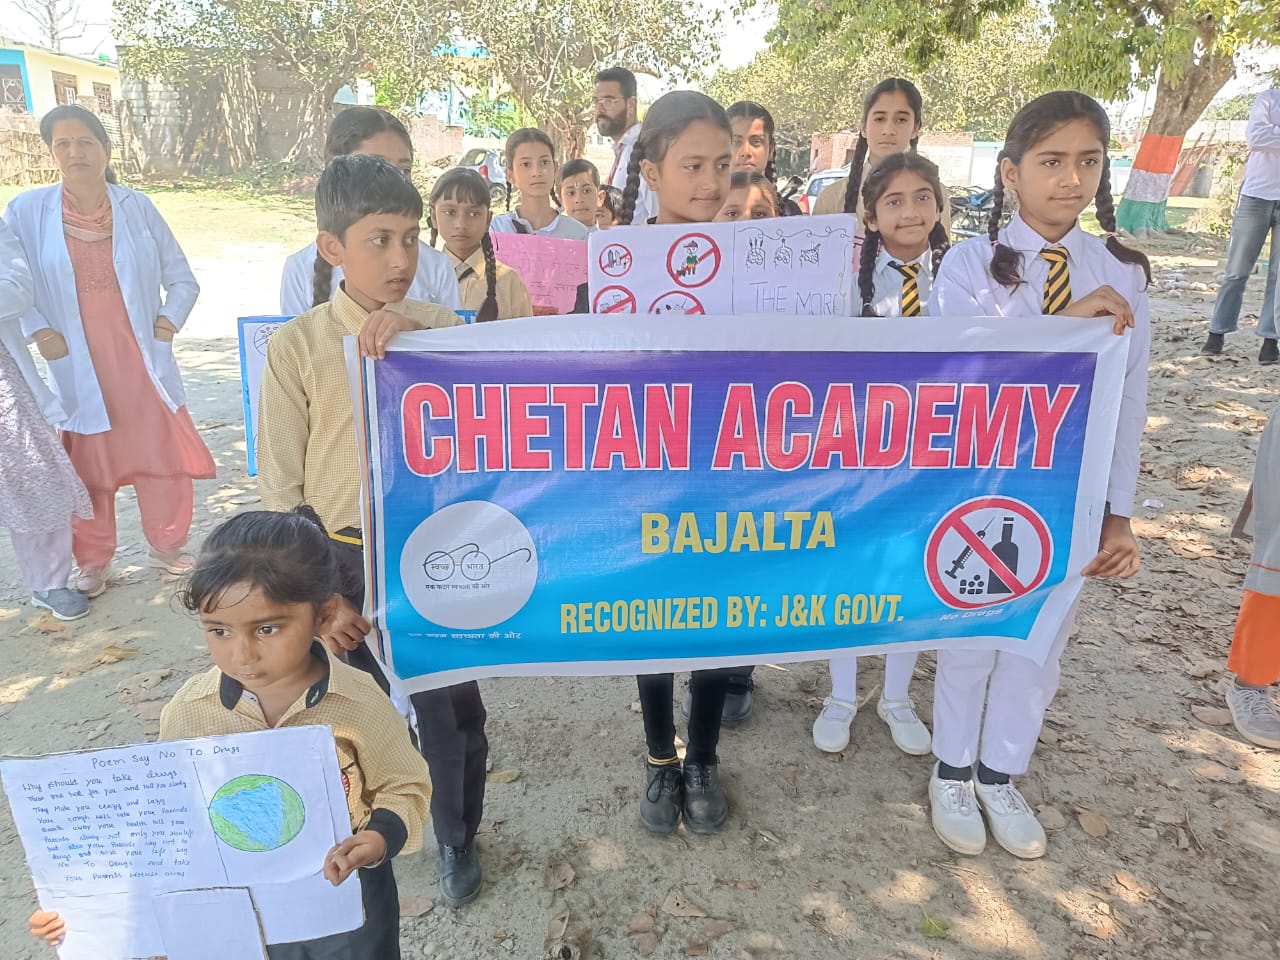 Chetan Academy Bajalta holds awareness program against drugs